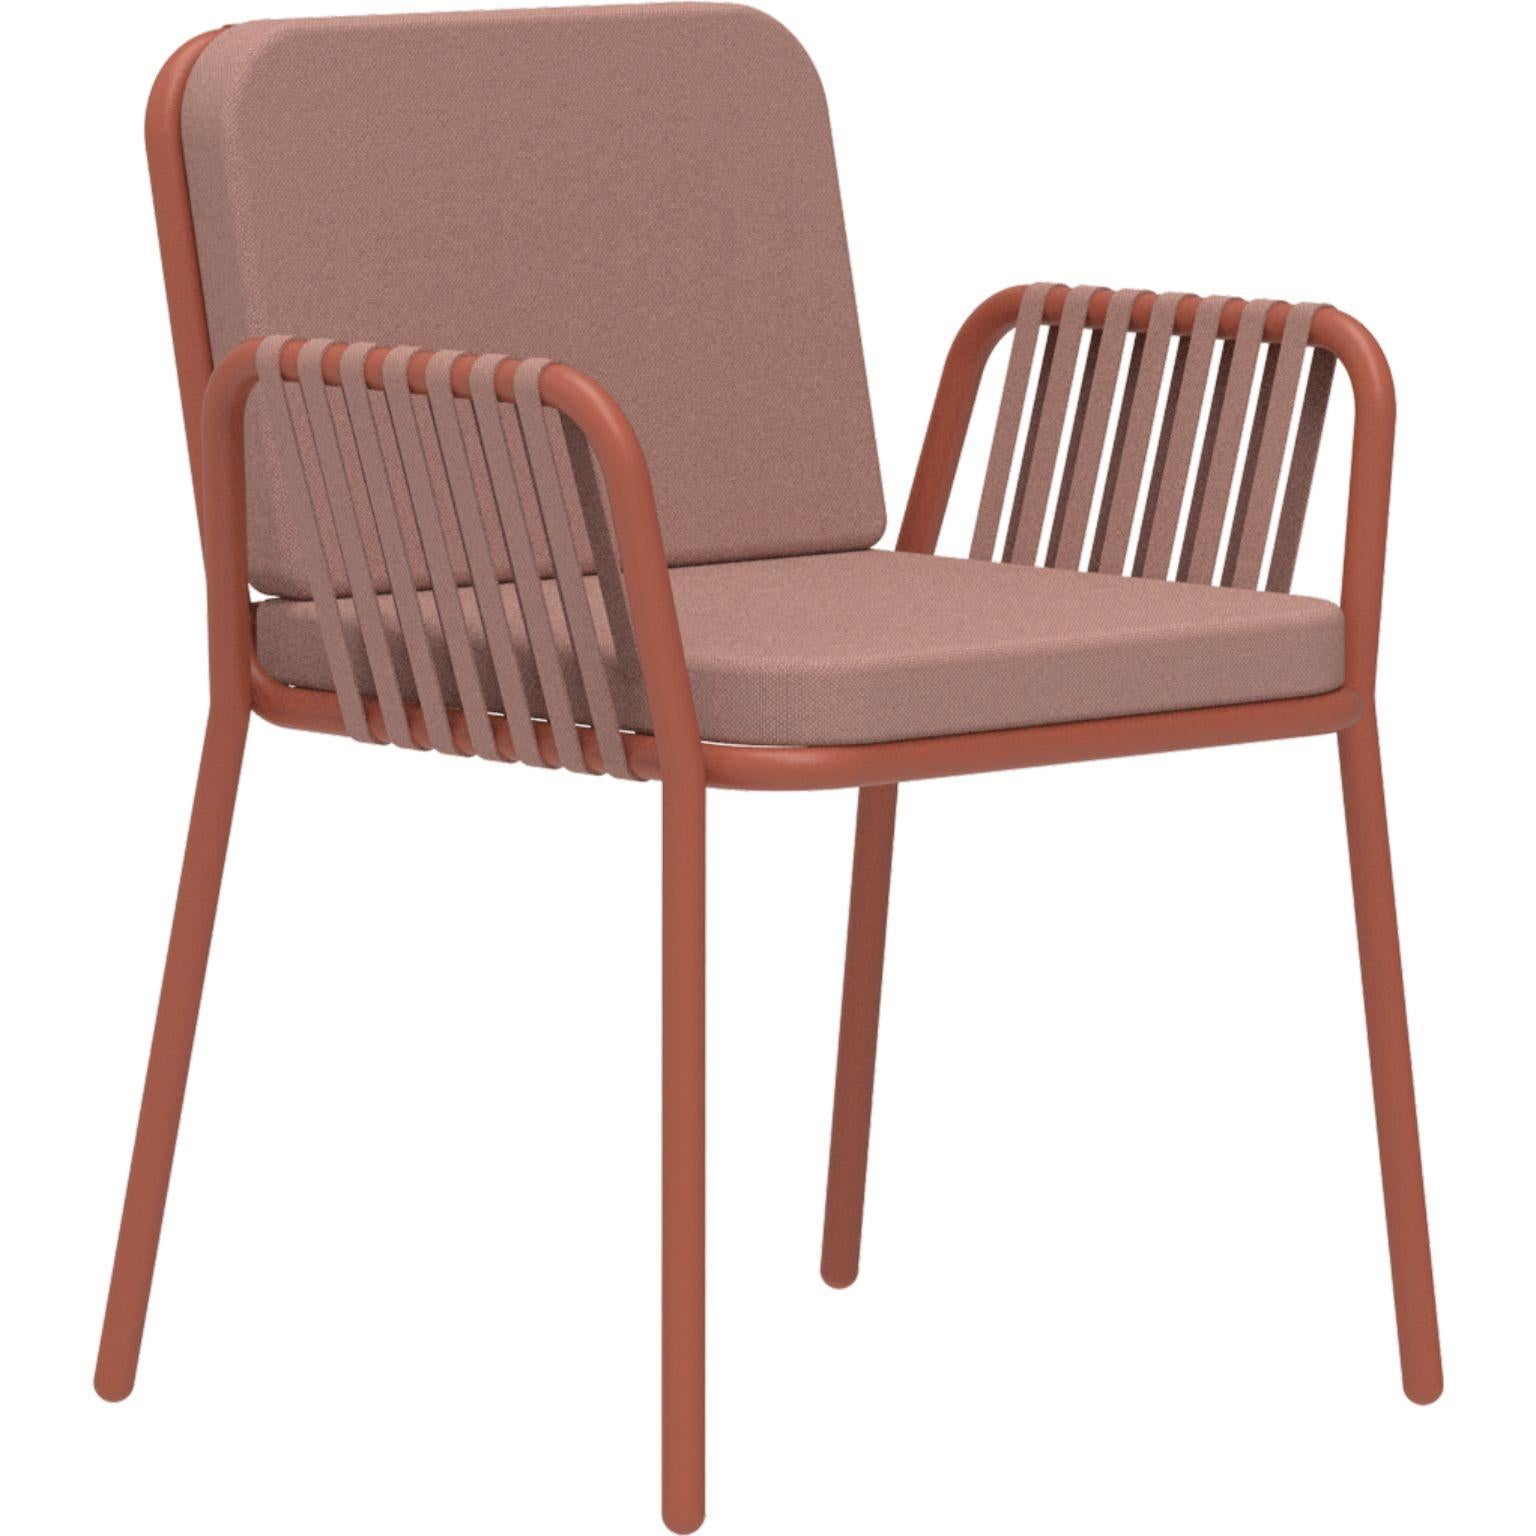 Lachs-Sessel mit Bändern von MOWEE
Abmessungen: T60 x B62 x H83 cm (Sitzhöhe 48).
MATERIAL: Aluminium und Polstermaterial.
Gewicht: 5 kg.
Auch in verschiedenen Farben und Ausführungen erhältlich.

Eine Collection'S, die durch ihre Schönheit und